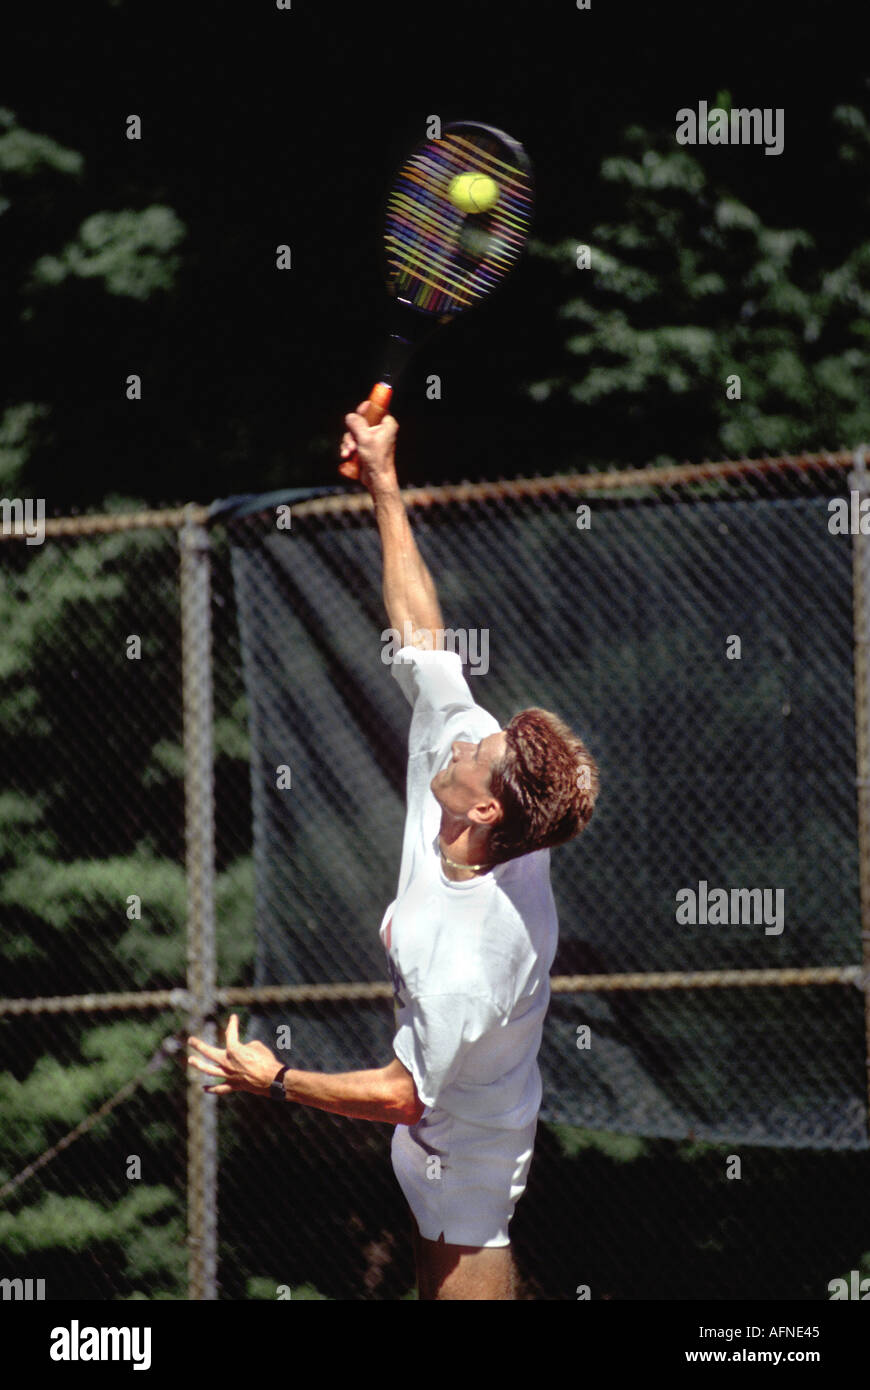 Les jeunes adultes de sexe masculin joue au tennis tournament Banque D'Images